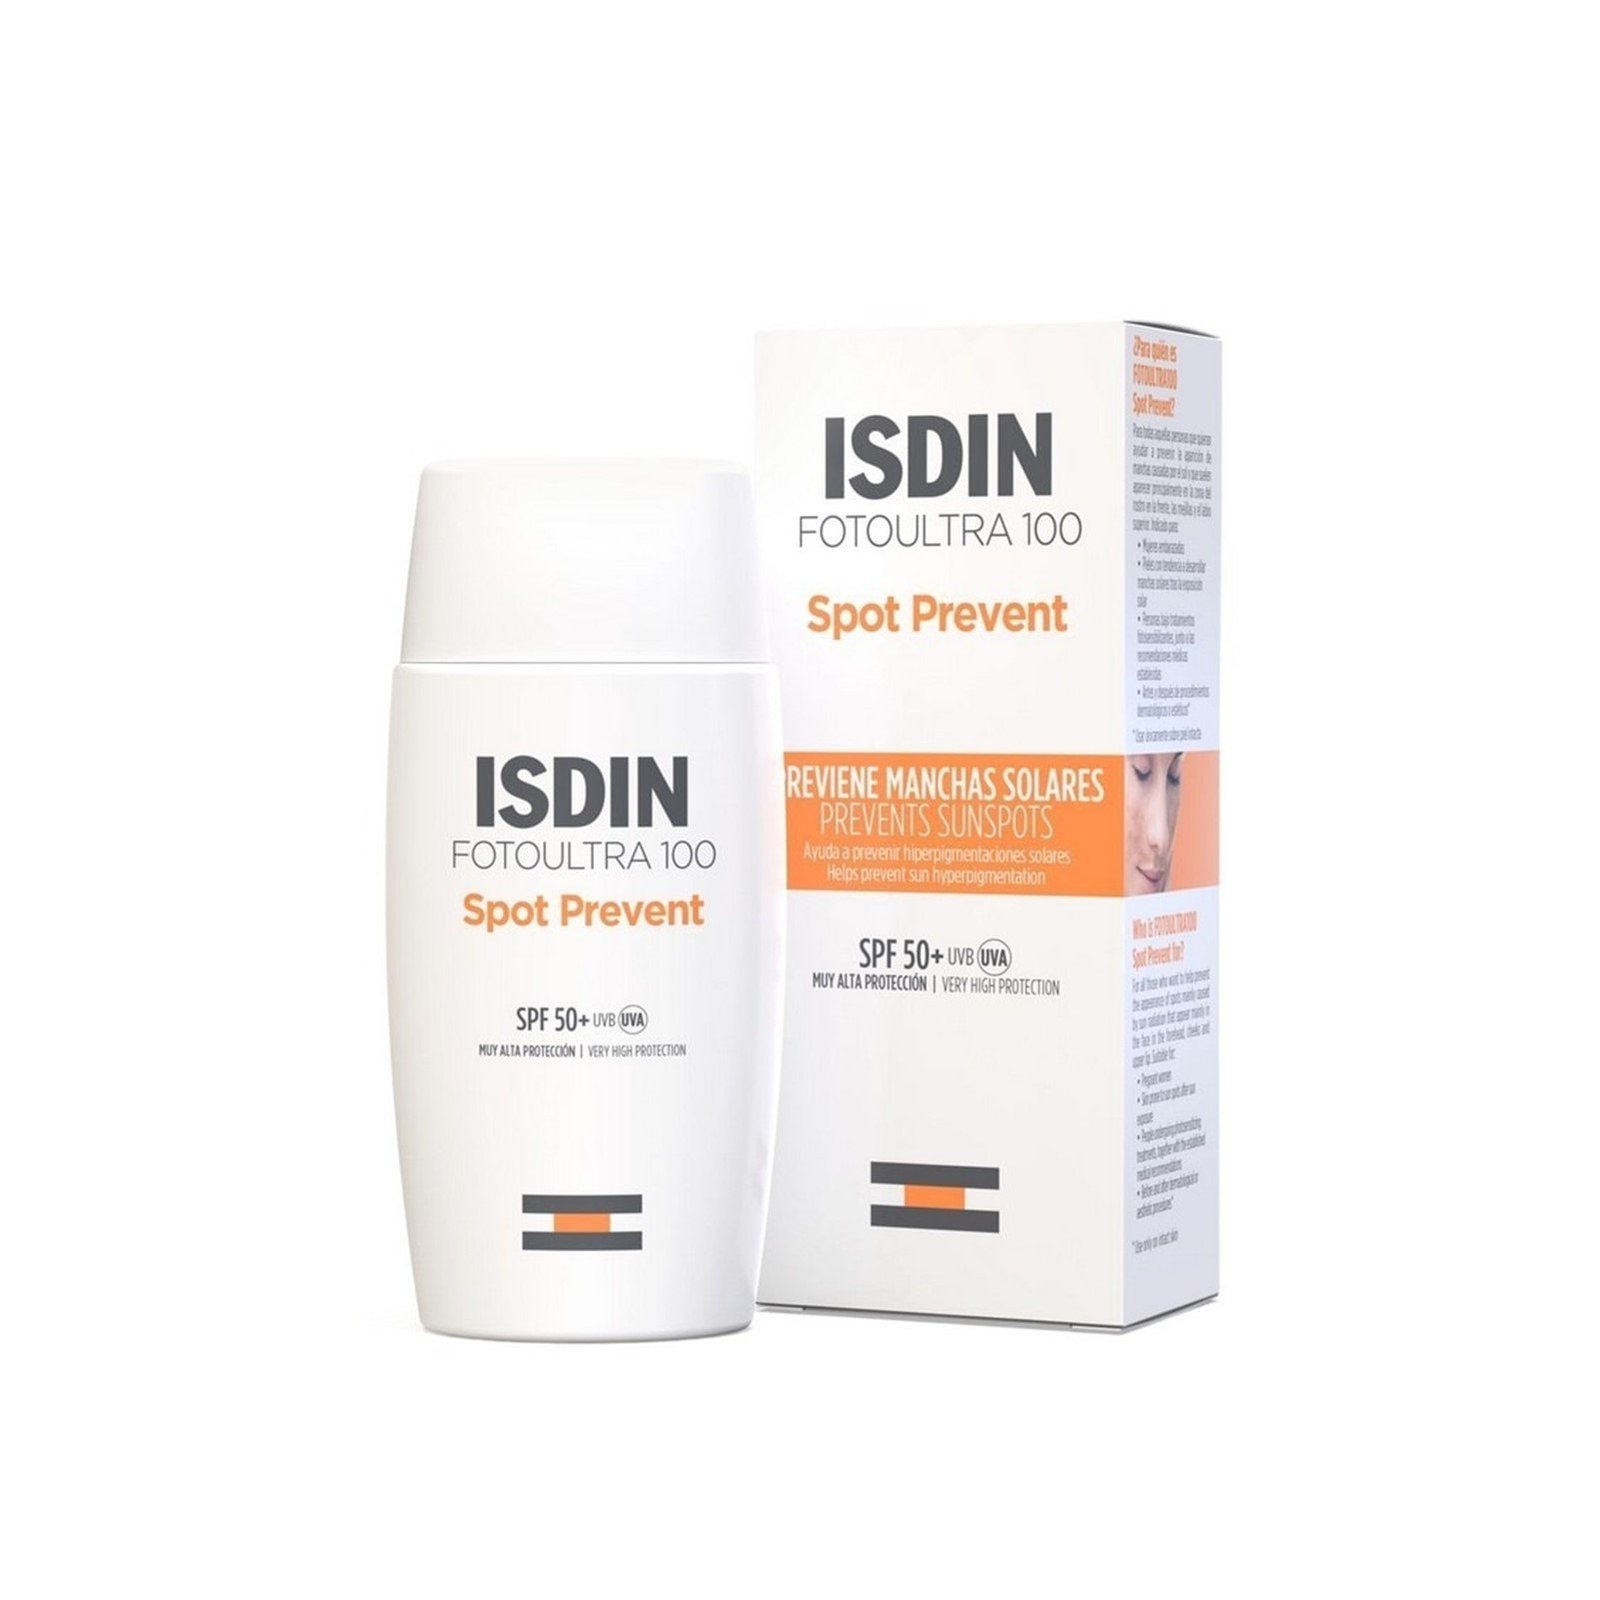 ISDIN FotoUltra 100 Spot Prevent Sunscreen SPF50+ 50ml (1.69floz)